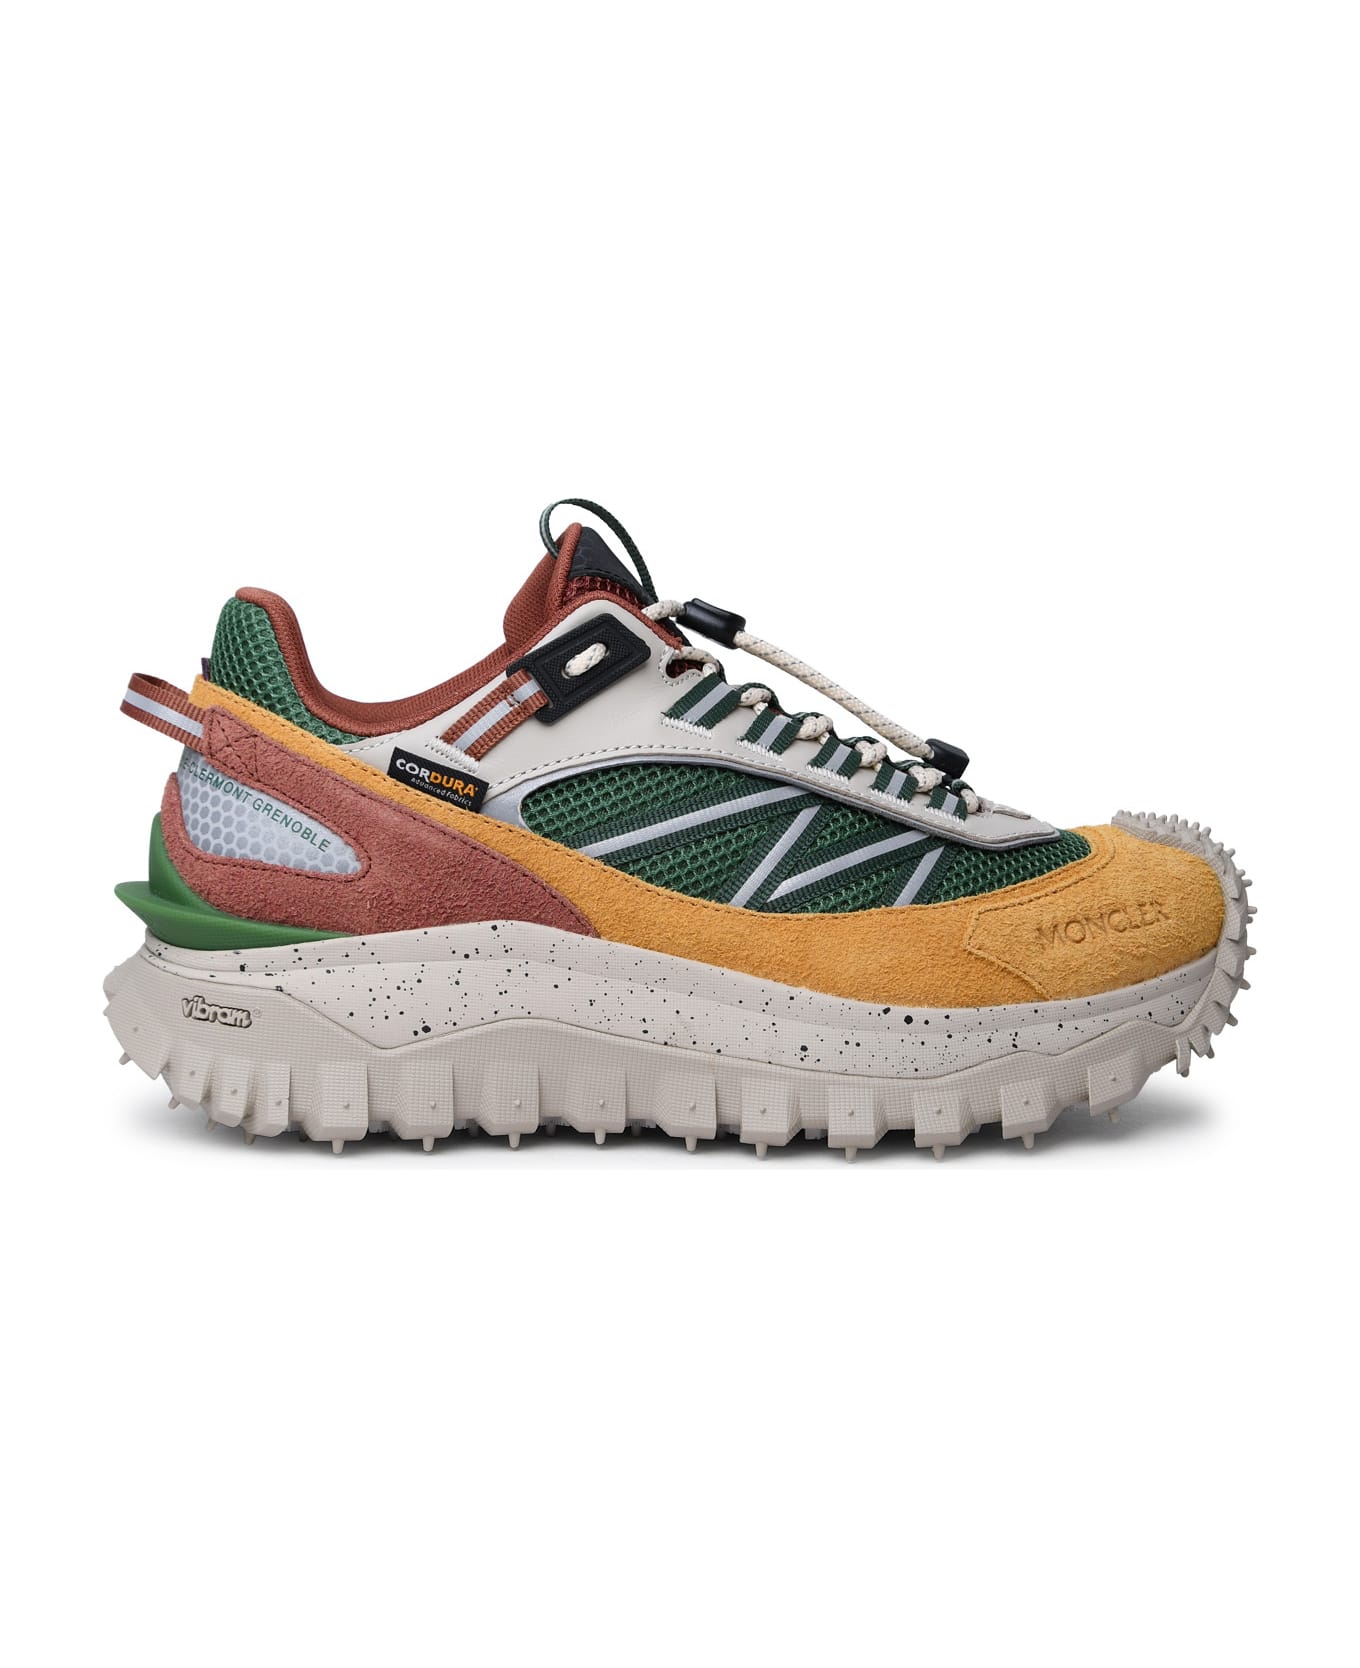 Moncler Multicolor Leather Blend Sneakers - MultiColour